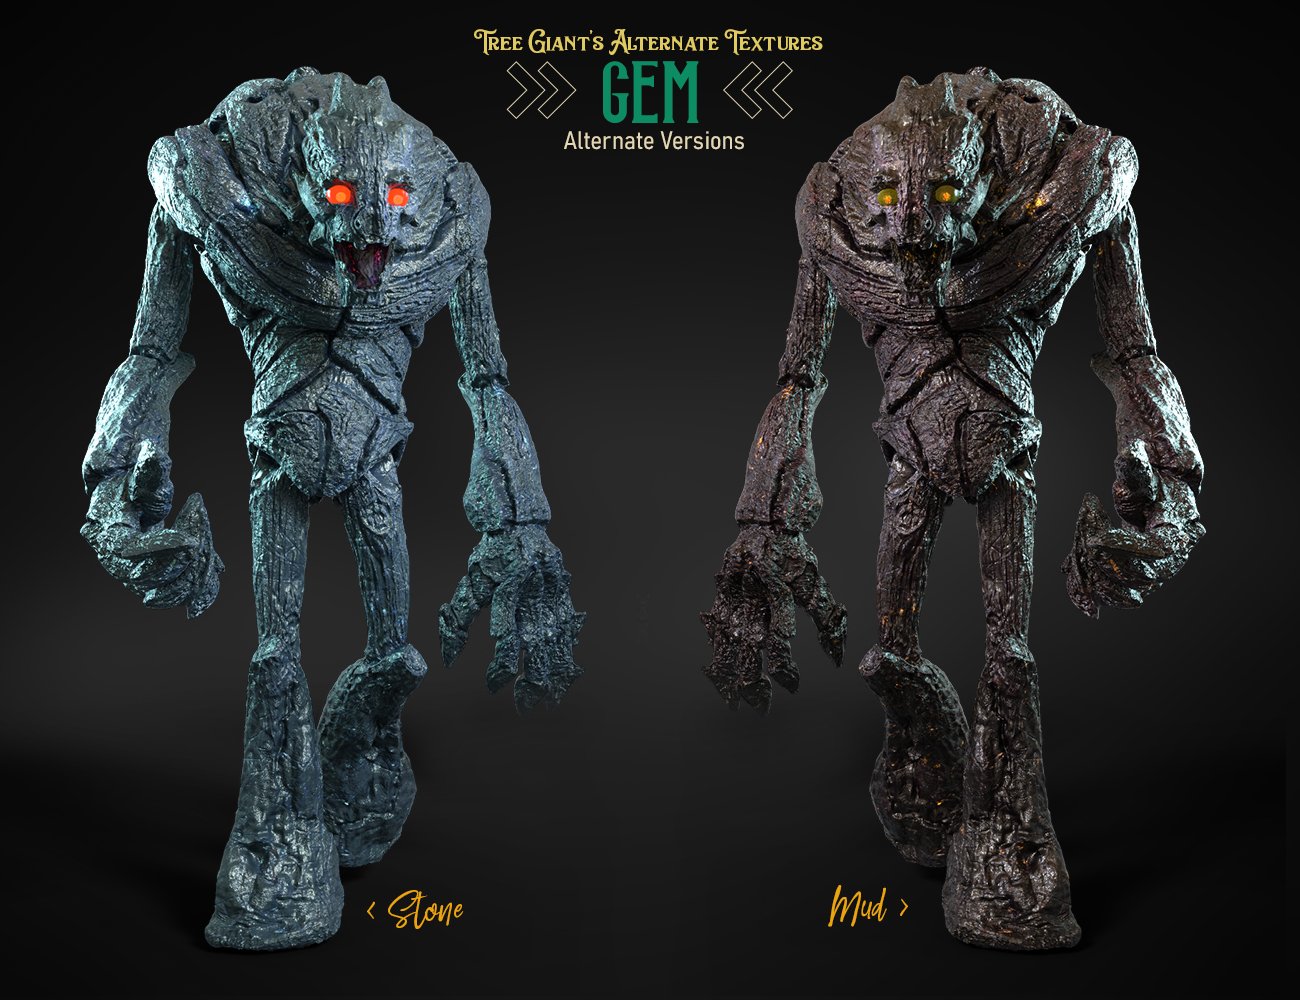 Tree Giant HD for Genesis 8.1 Males Alternate Textures by: FenixPhoenixEsid, 3D Models by Daz 3D